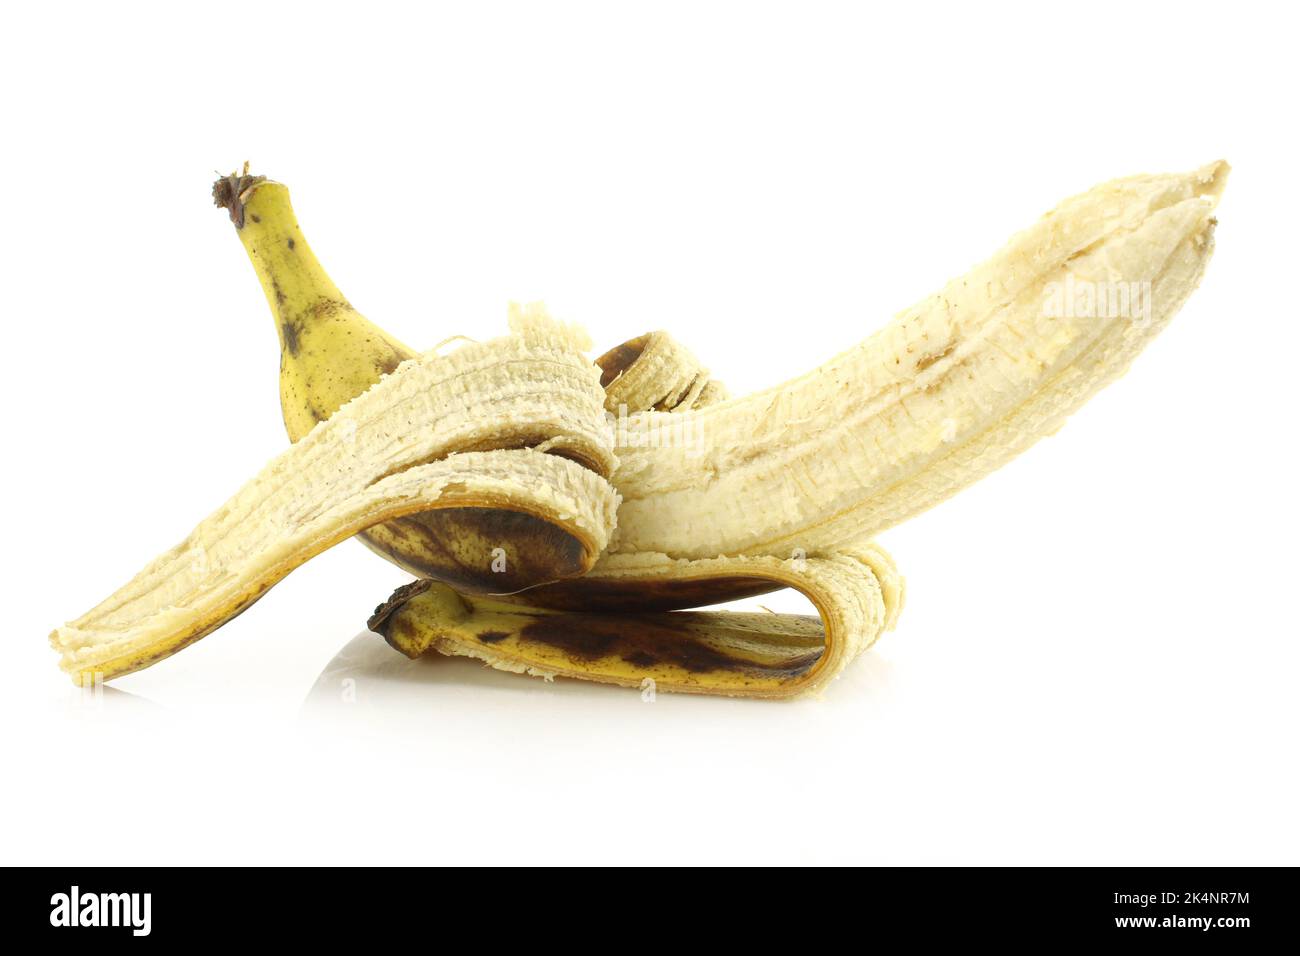 Half peeled overripe banana isolated on white background Stock Photo